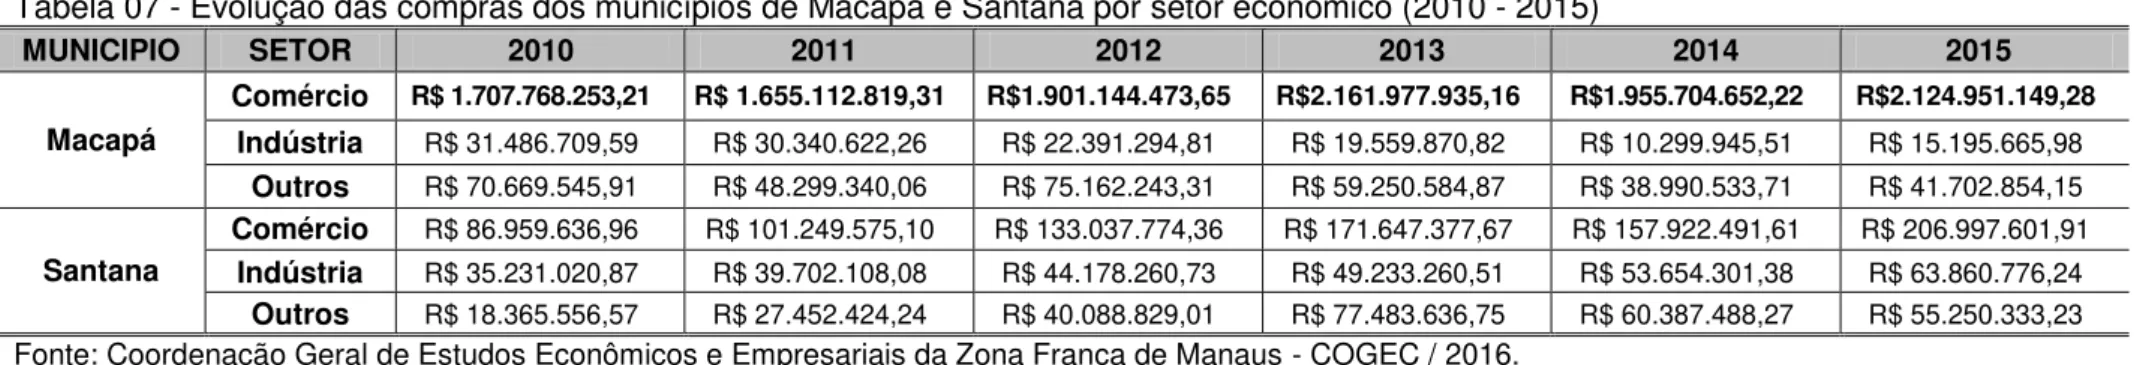 Tabela 07 - Evolução das compras dos municípios de Macapá e Santana por setor econômico (2010 - 2015)  MUNICIPIO  SETOR  2010  2011  2012  2013  2014  2015  Macapá  Comércio  R$ 1.707.768.253,21  R$ 1.655.112.819,31  R$1.901.144.473,65  R$2.161.977.935,16 